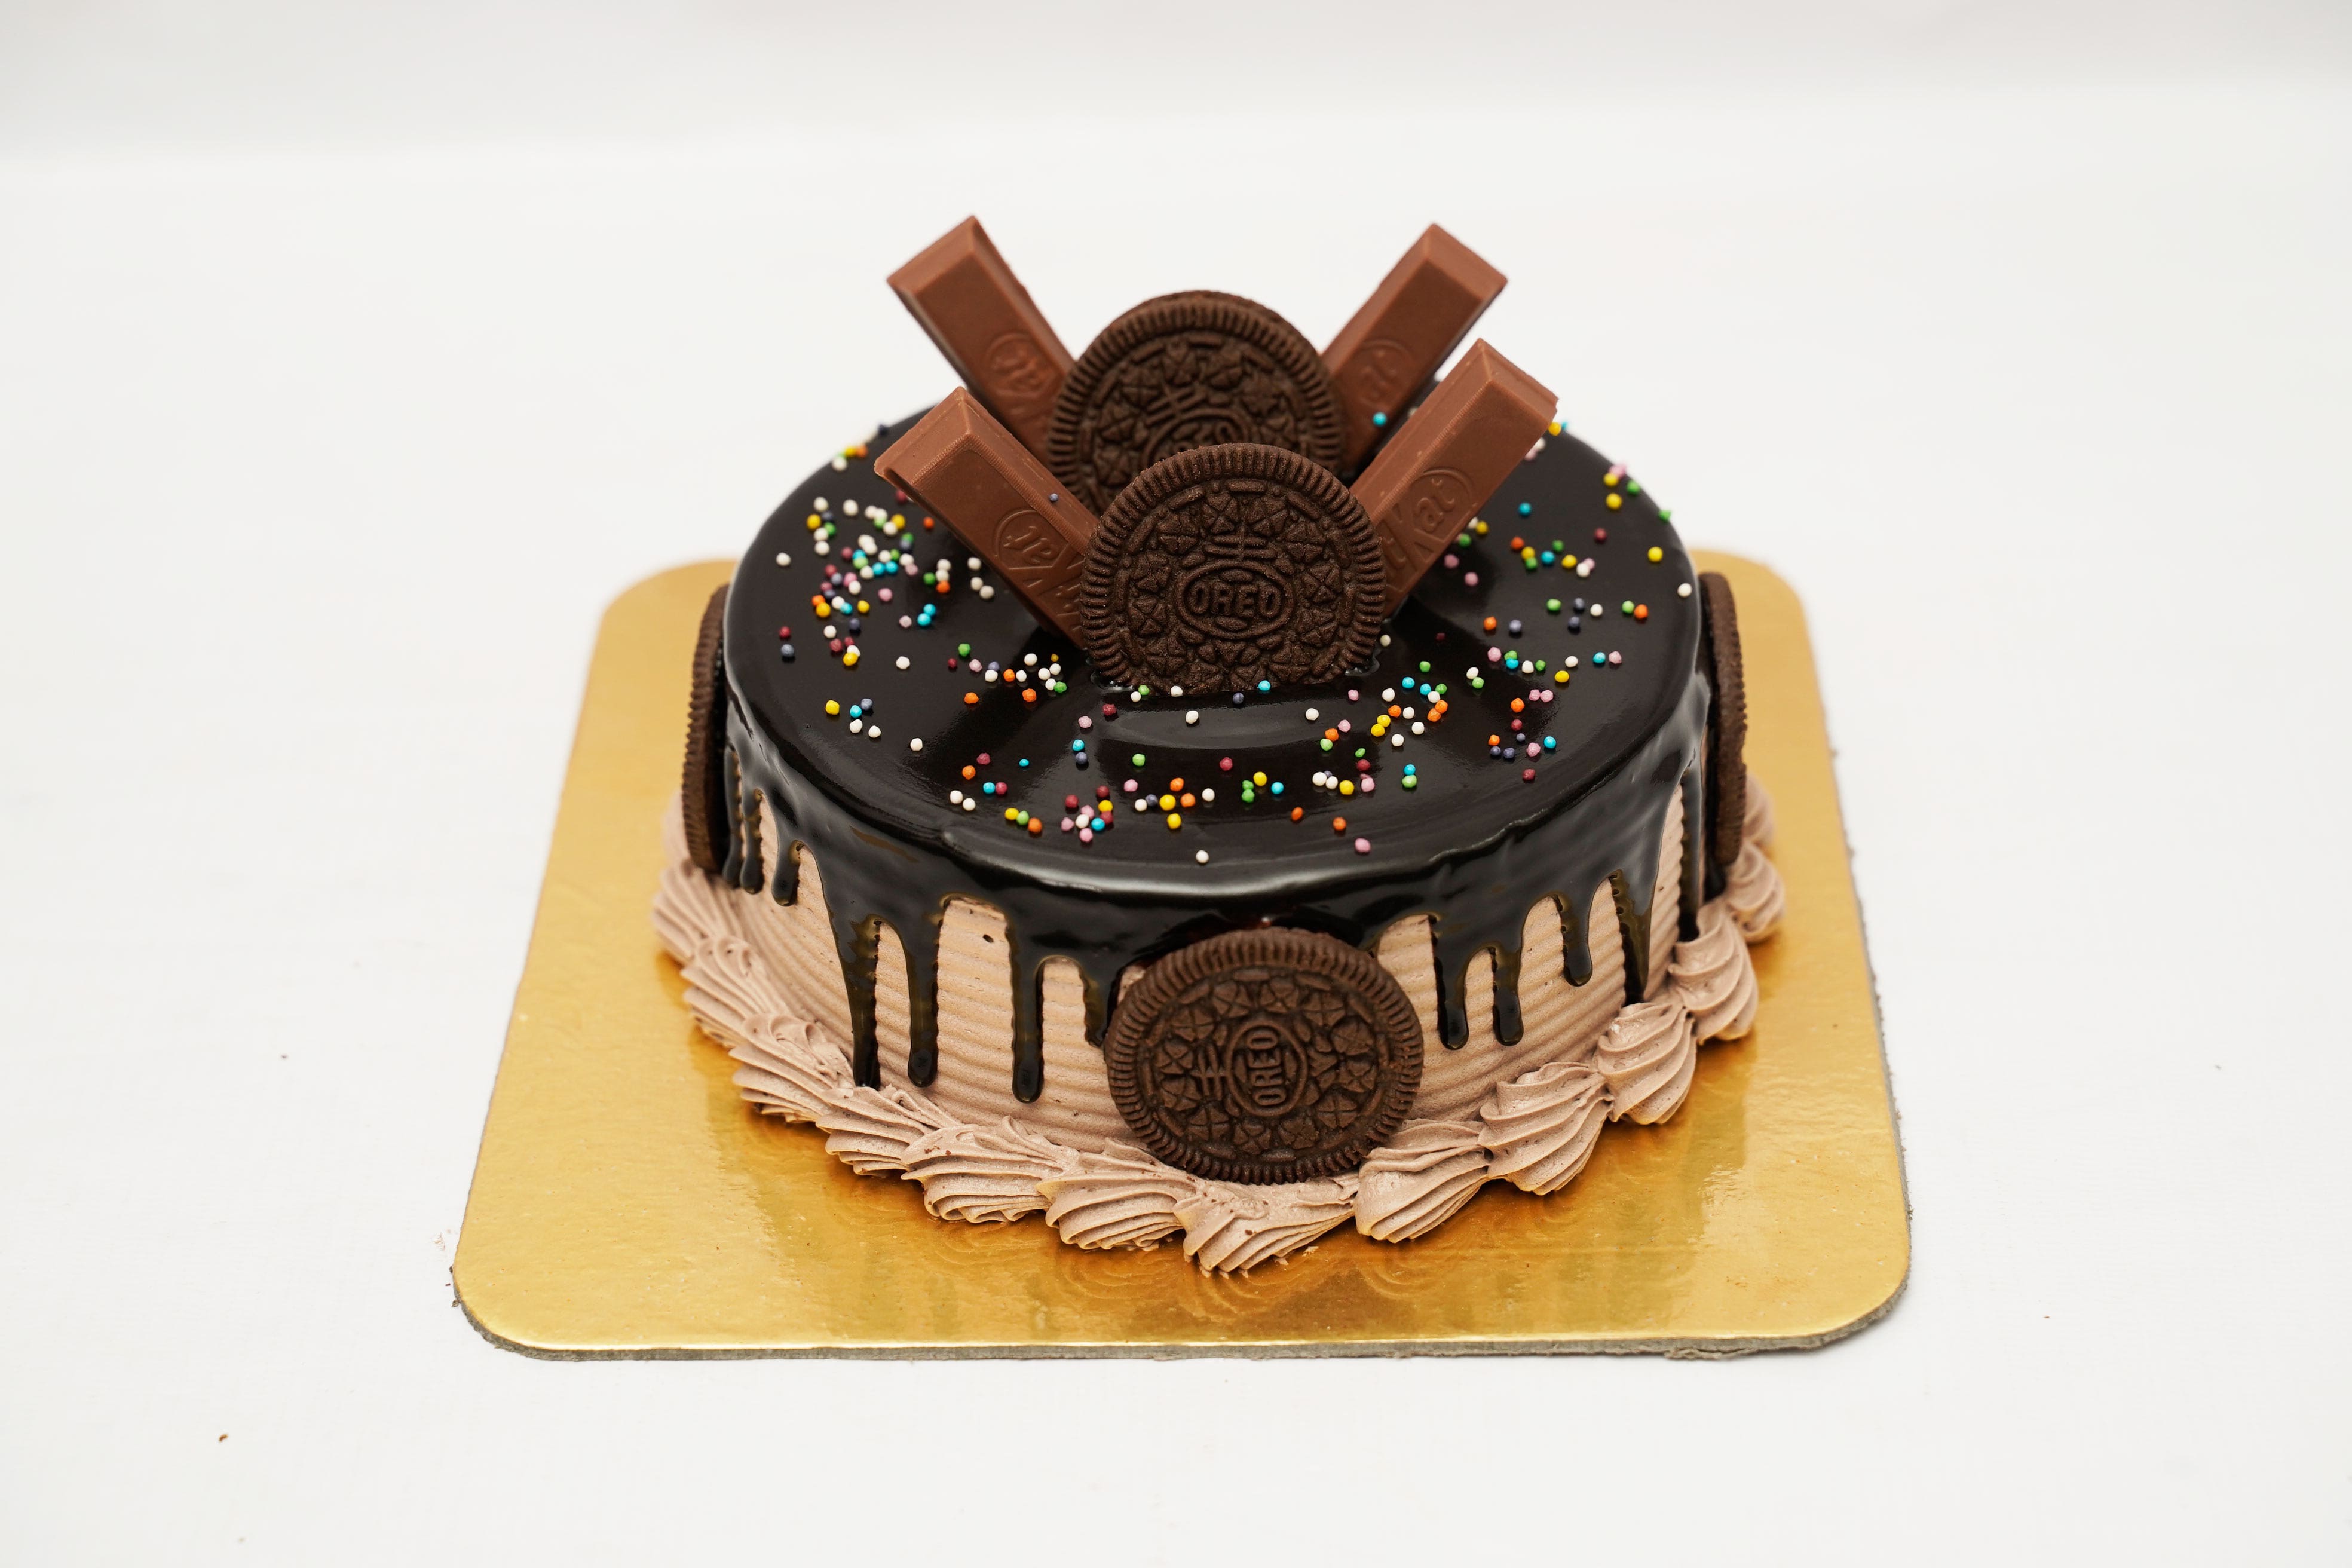 Easy Chocolate Cake Recipe | olivemagazine